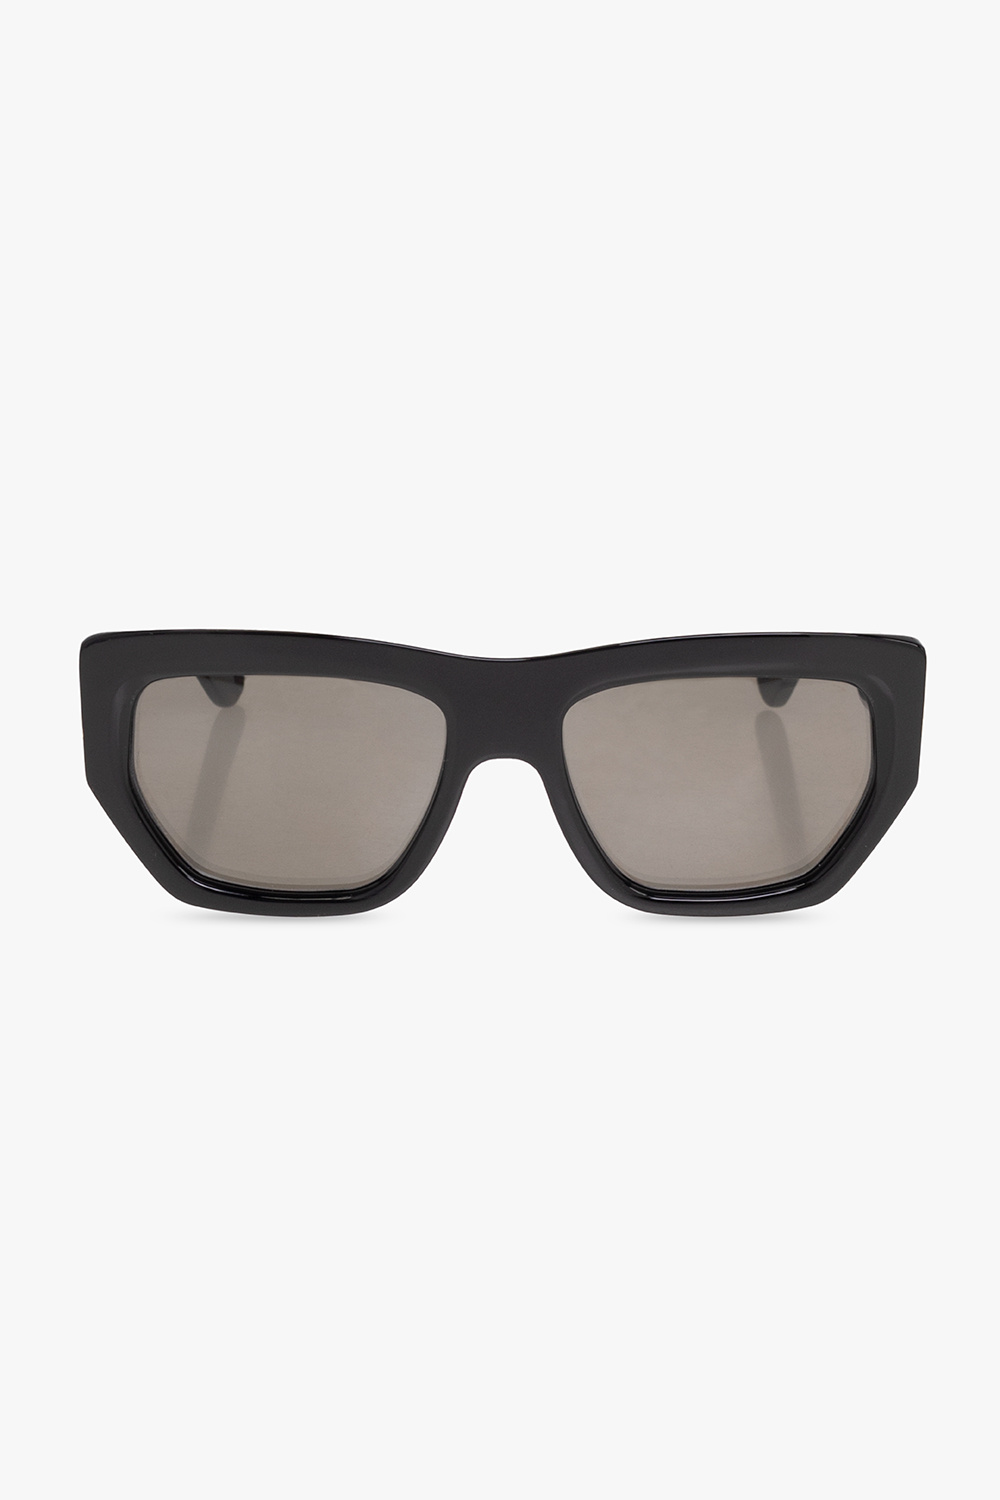 Emmanuelle Khanh ‘Silencio’ sunglasses